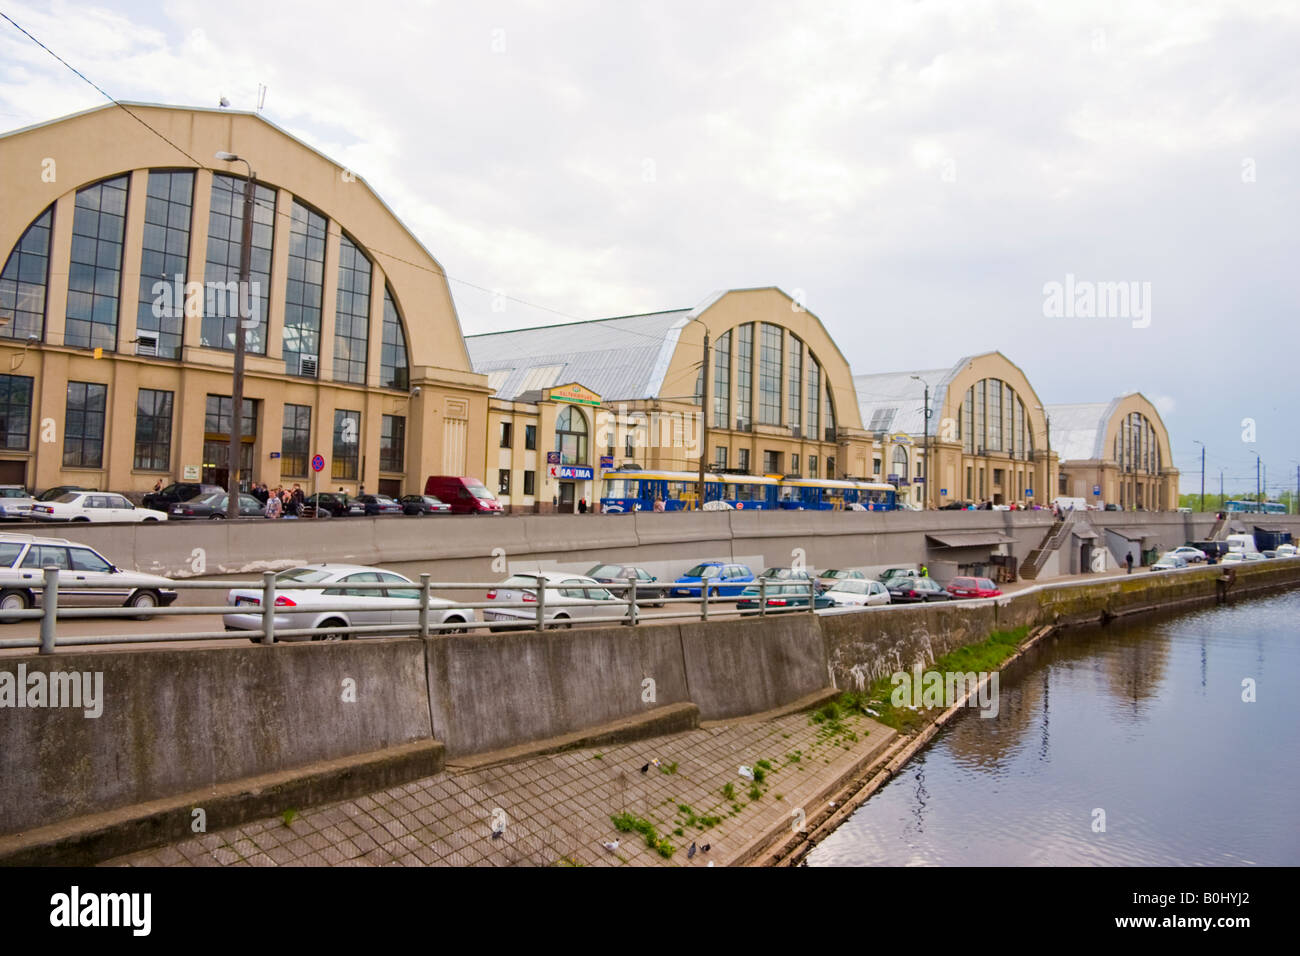 Rigaer Zentralmarkt, Zeppelin Hangar, Lettland, Europa Stockfoto